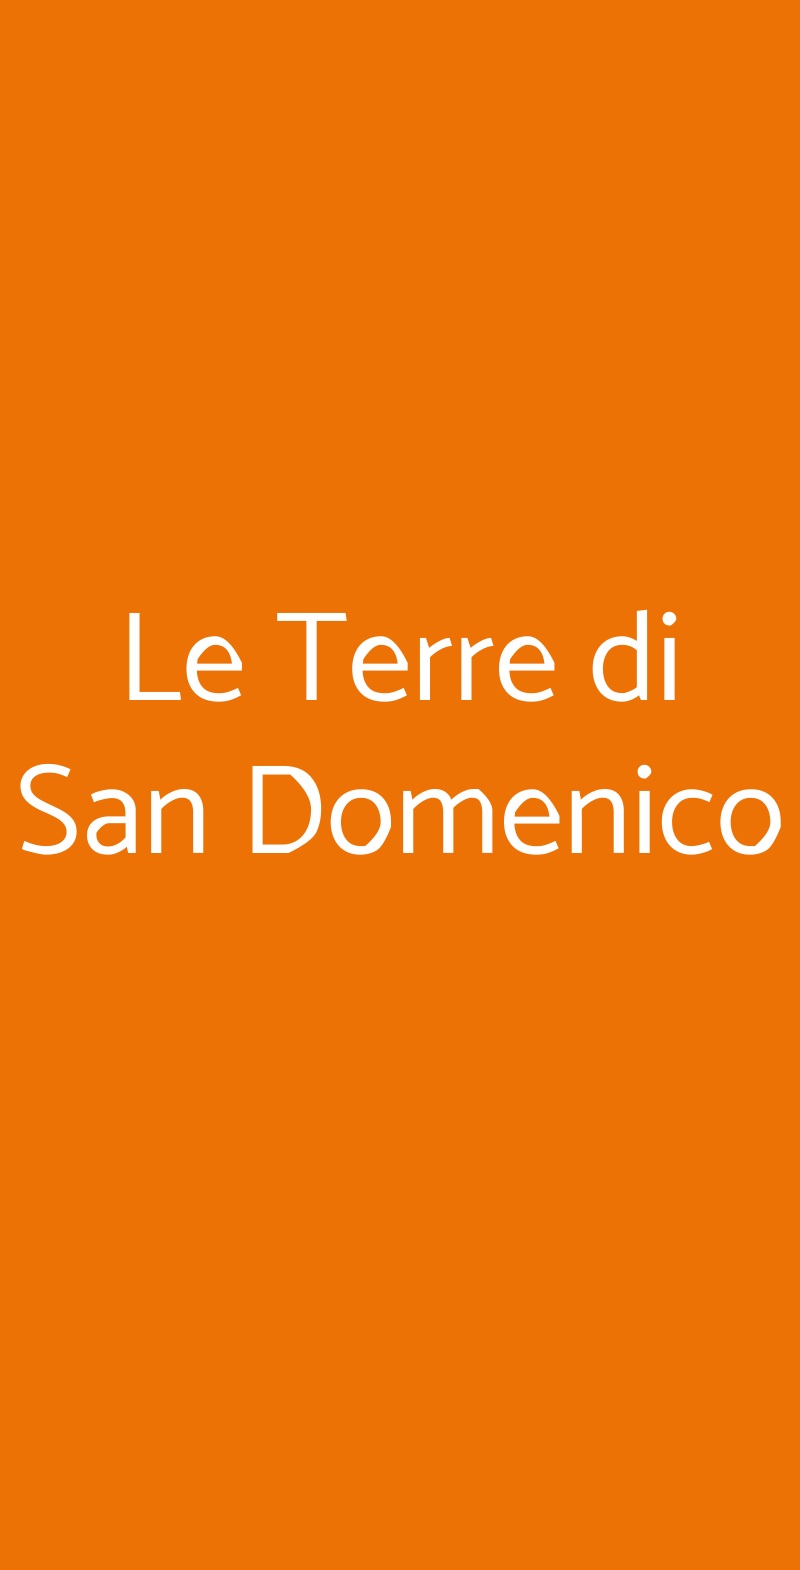 Le Terre di San Domenico Carlentini menù 1 pagina